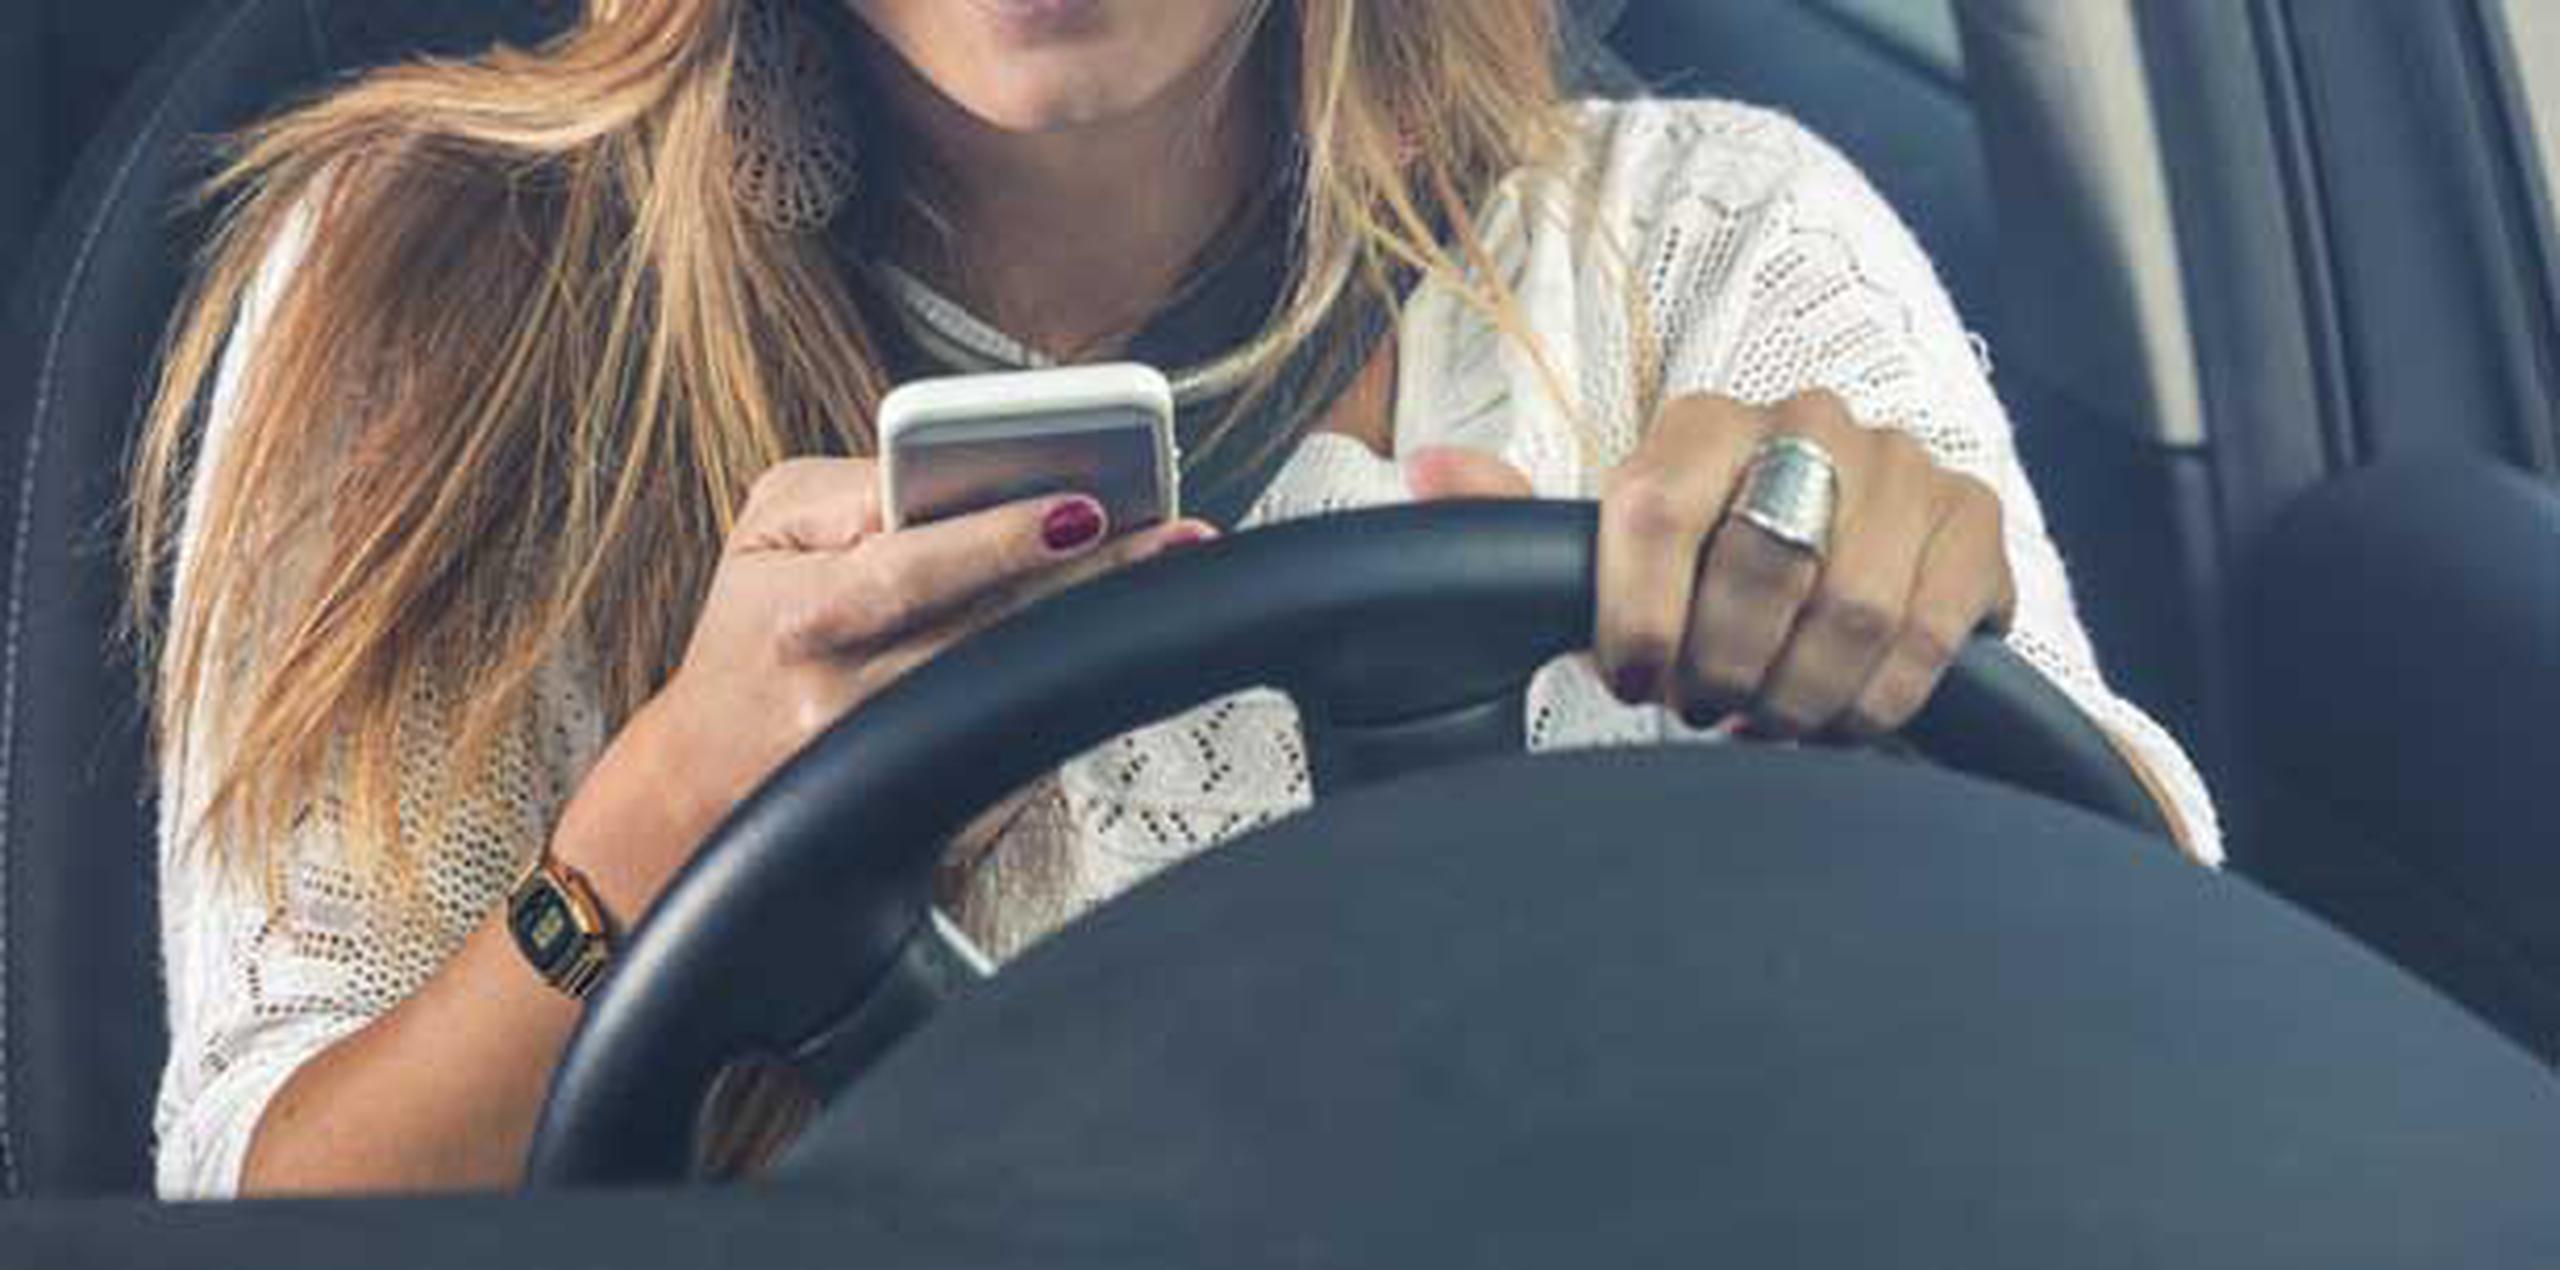 En el 2011 se aprobó una enmienda a la “Ley de Vehículos y Tránsito” para imponer multas de $50 a quienes manejan utilizando sus celulares. (Archivo)